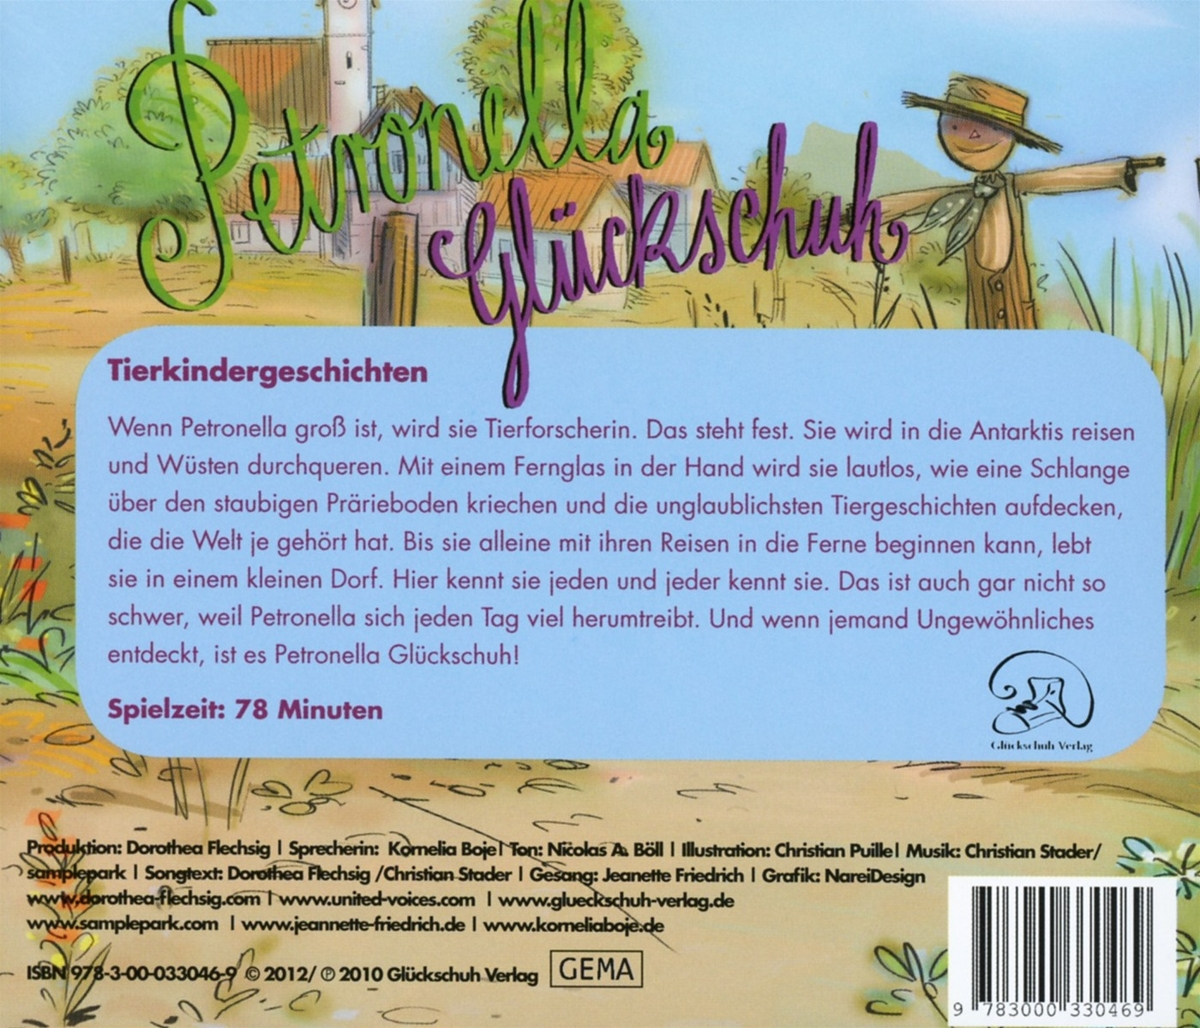 Flechsig Petronella - (CD) Gluckschuh: - Tierkindergeschichten Dorothea